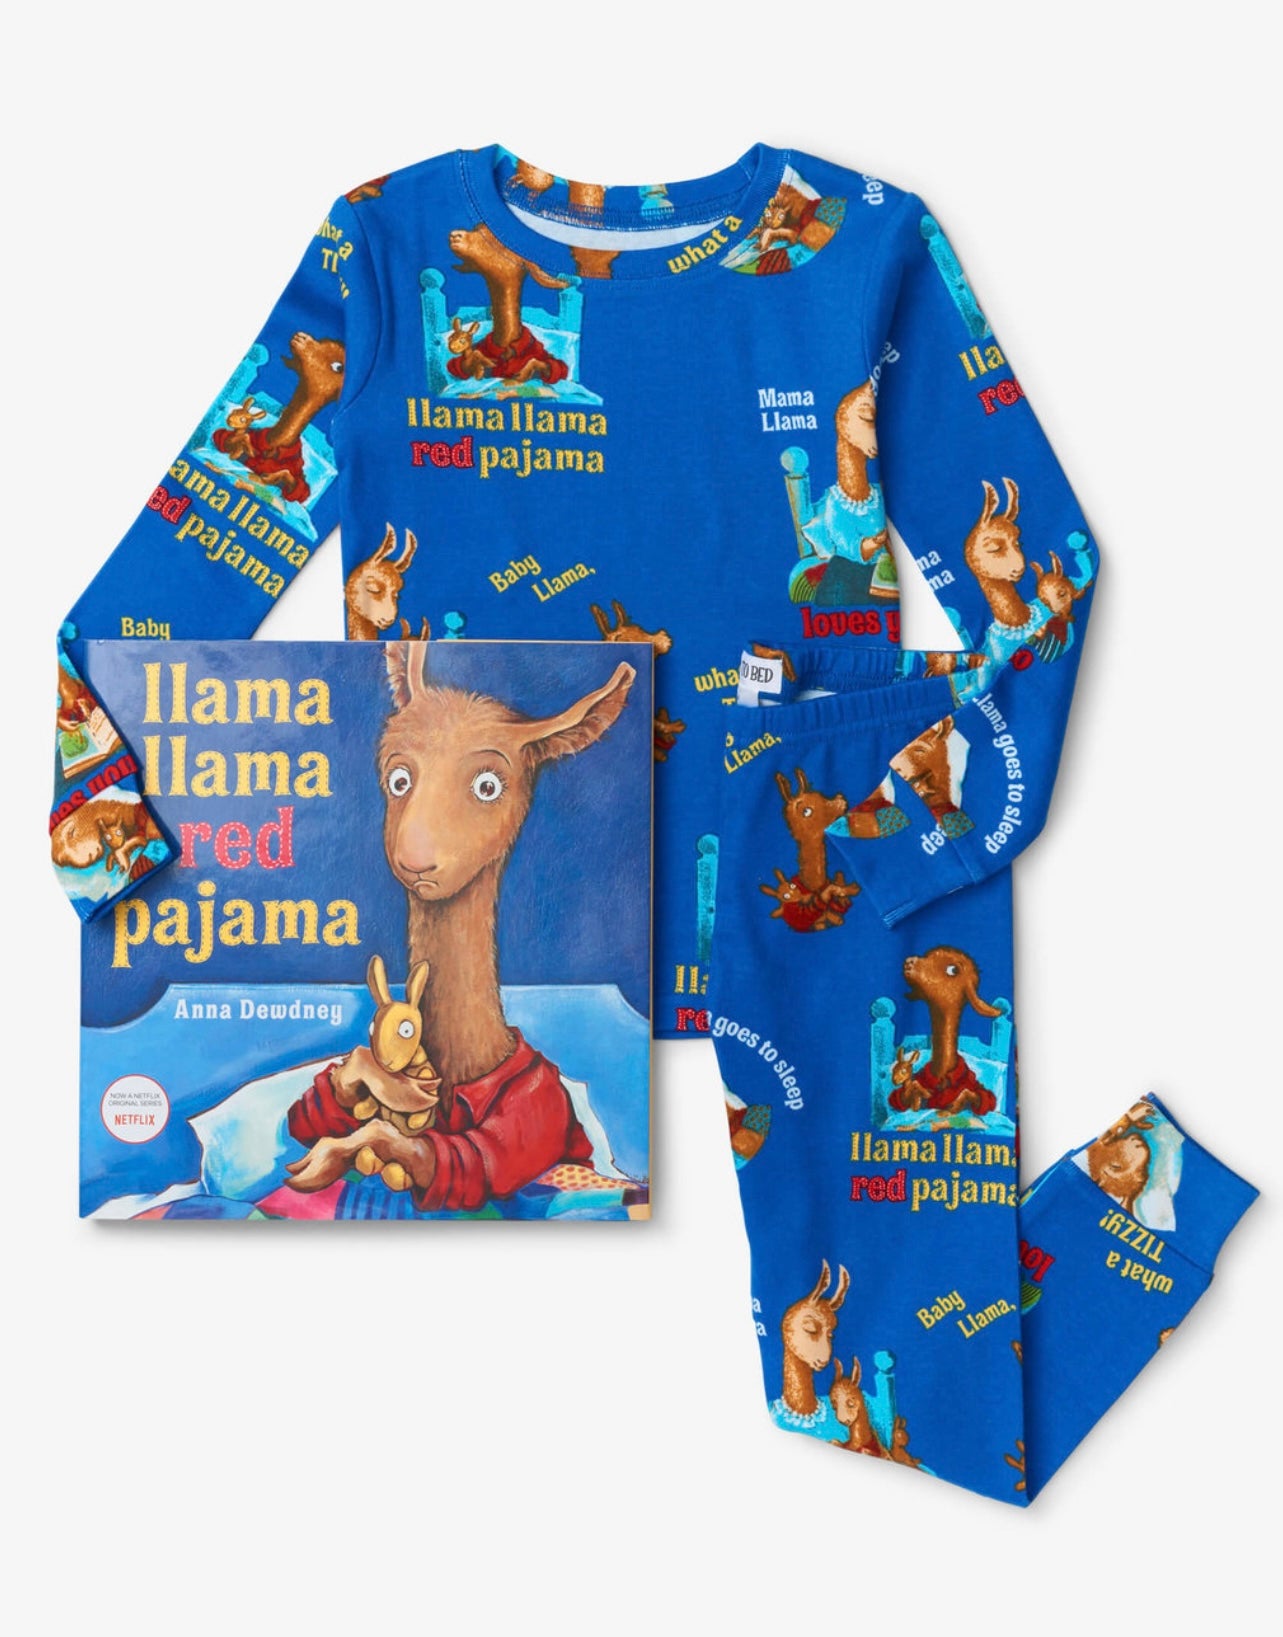 Llama Llama Red PJ & Book